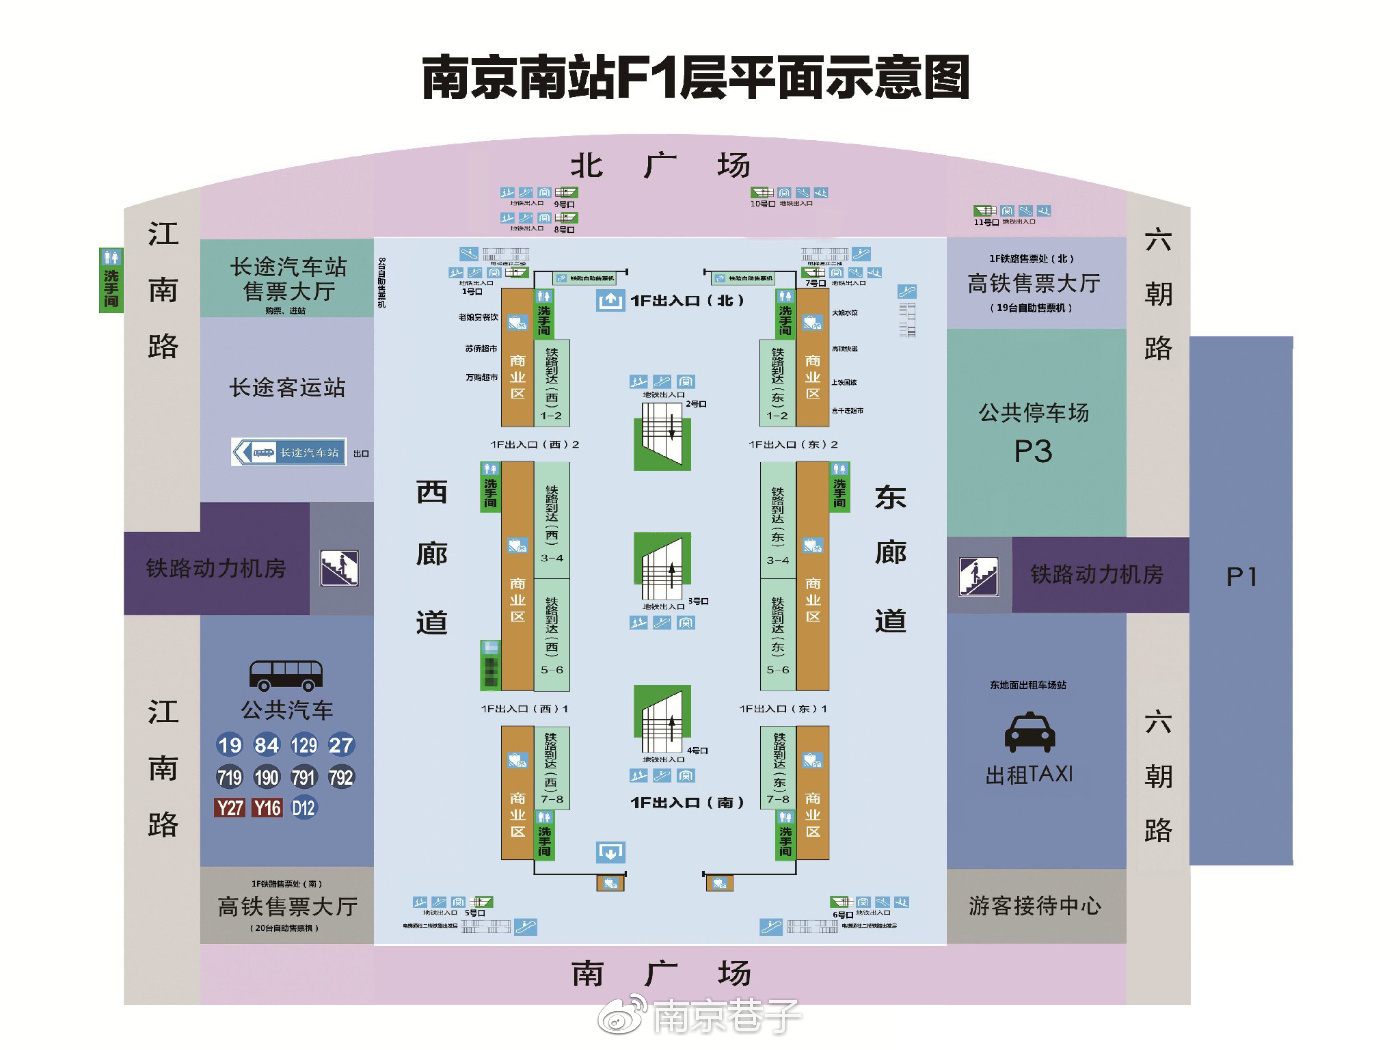 南京南站路线图图片